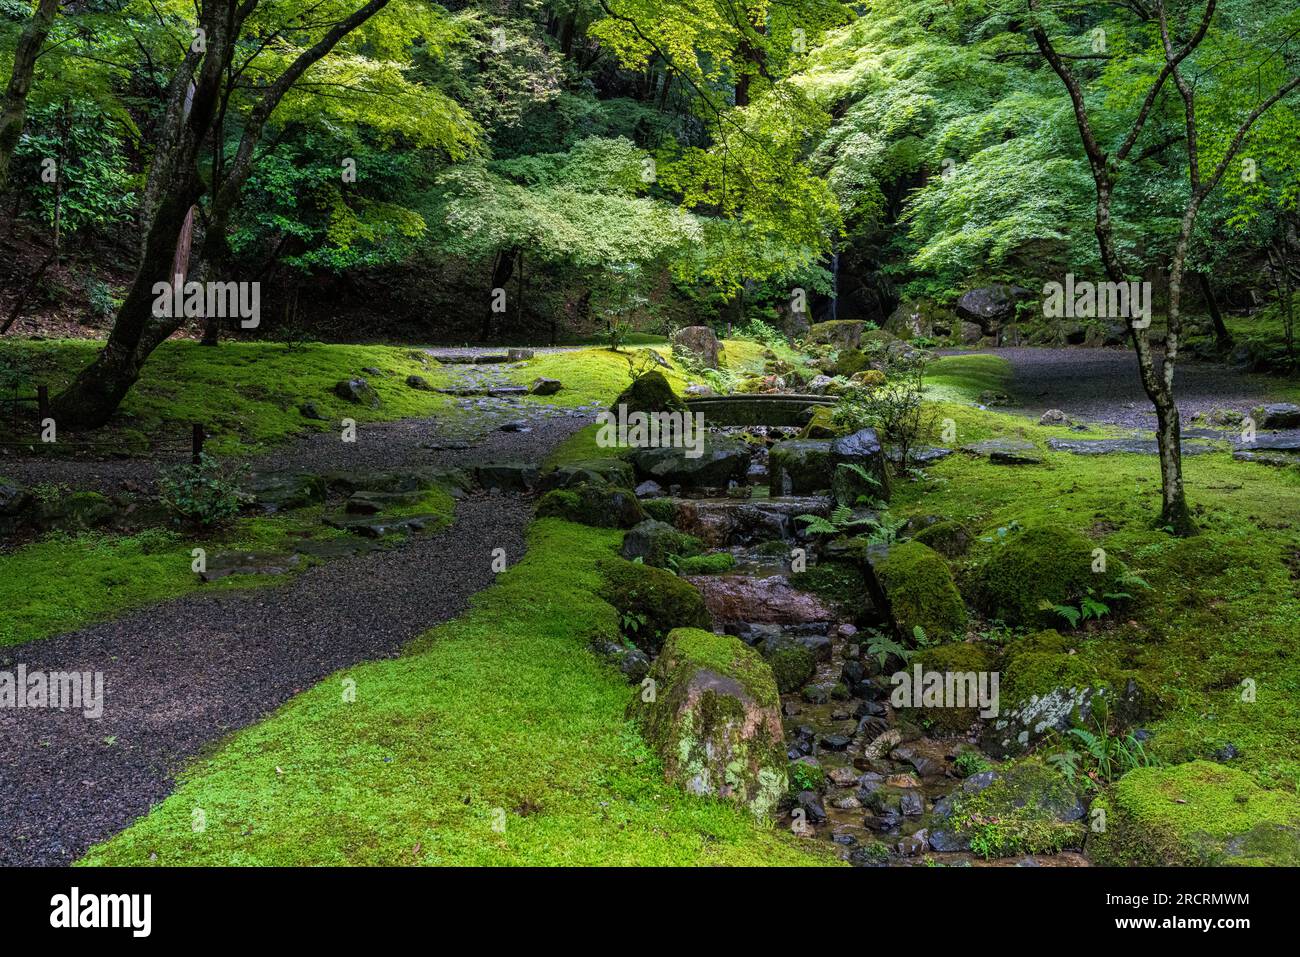 Lo splendido tempio Daigo-ji e il suo giardino durante la stagione estiva. Kyoto, Giappone. Foto Stock